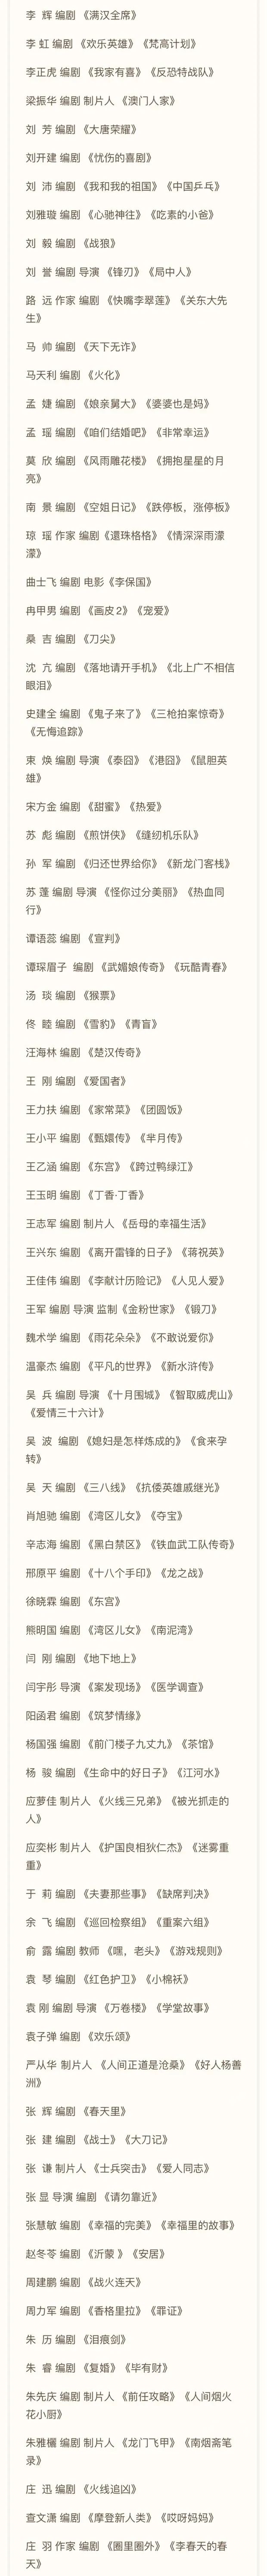 琼瑶等111名作家、导演联名呼吁抵制郭敬明、于正：抄袭剽窃者不应成为榜样